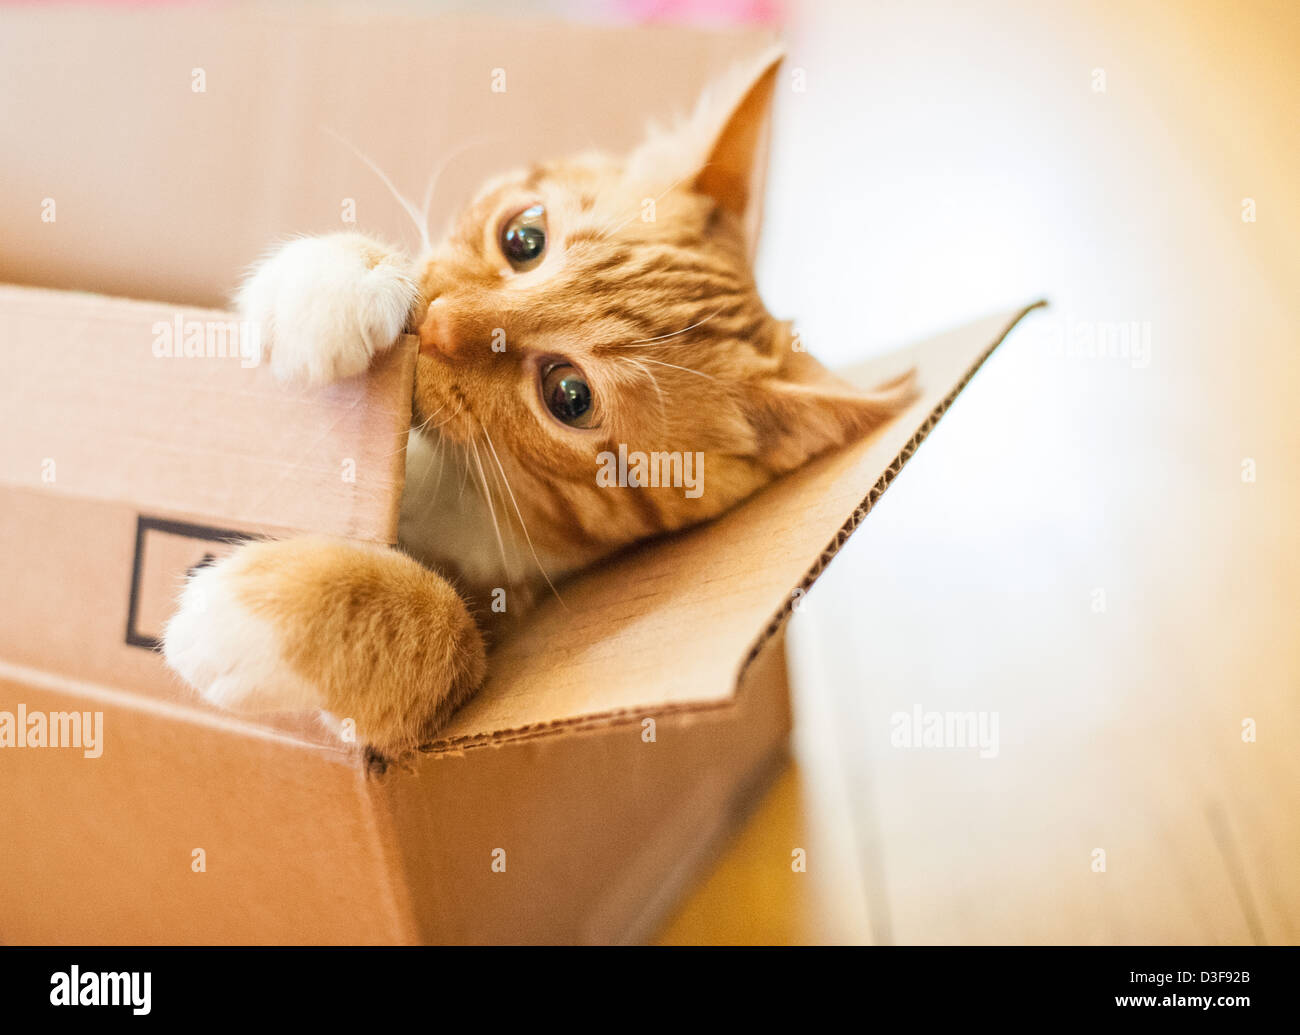 Quatre mois chat tigré orange à mâcher sur une boîte en carton Banque D'Images